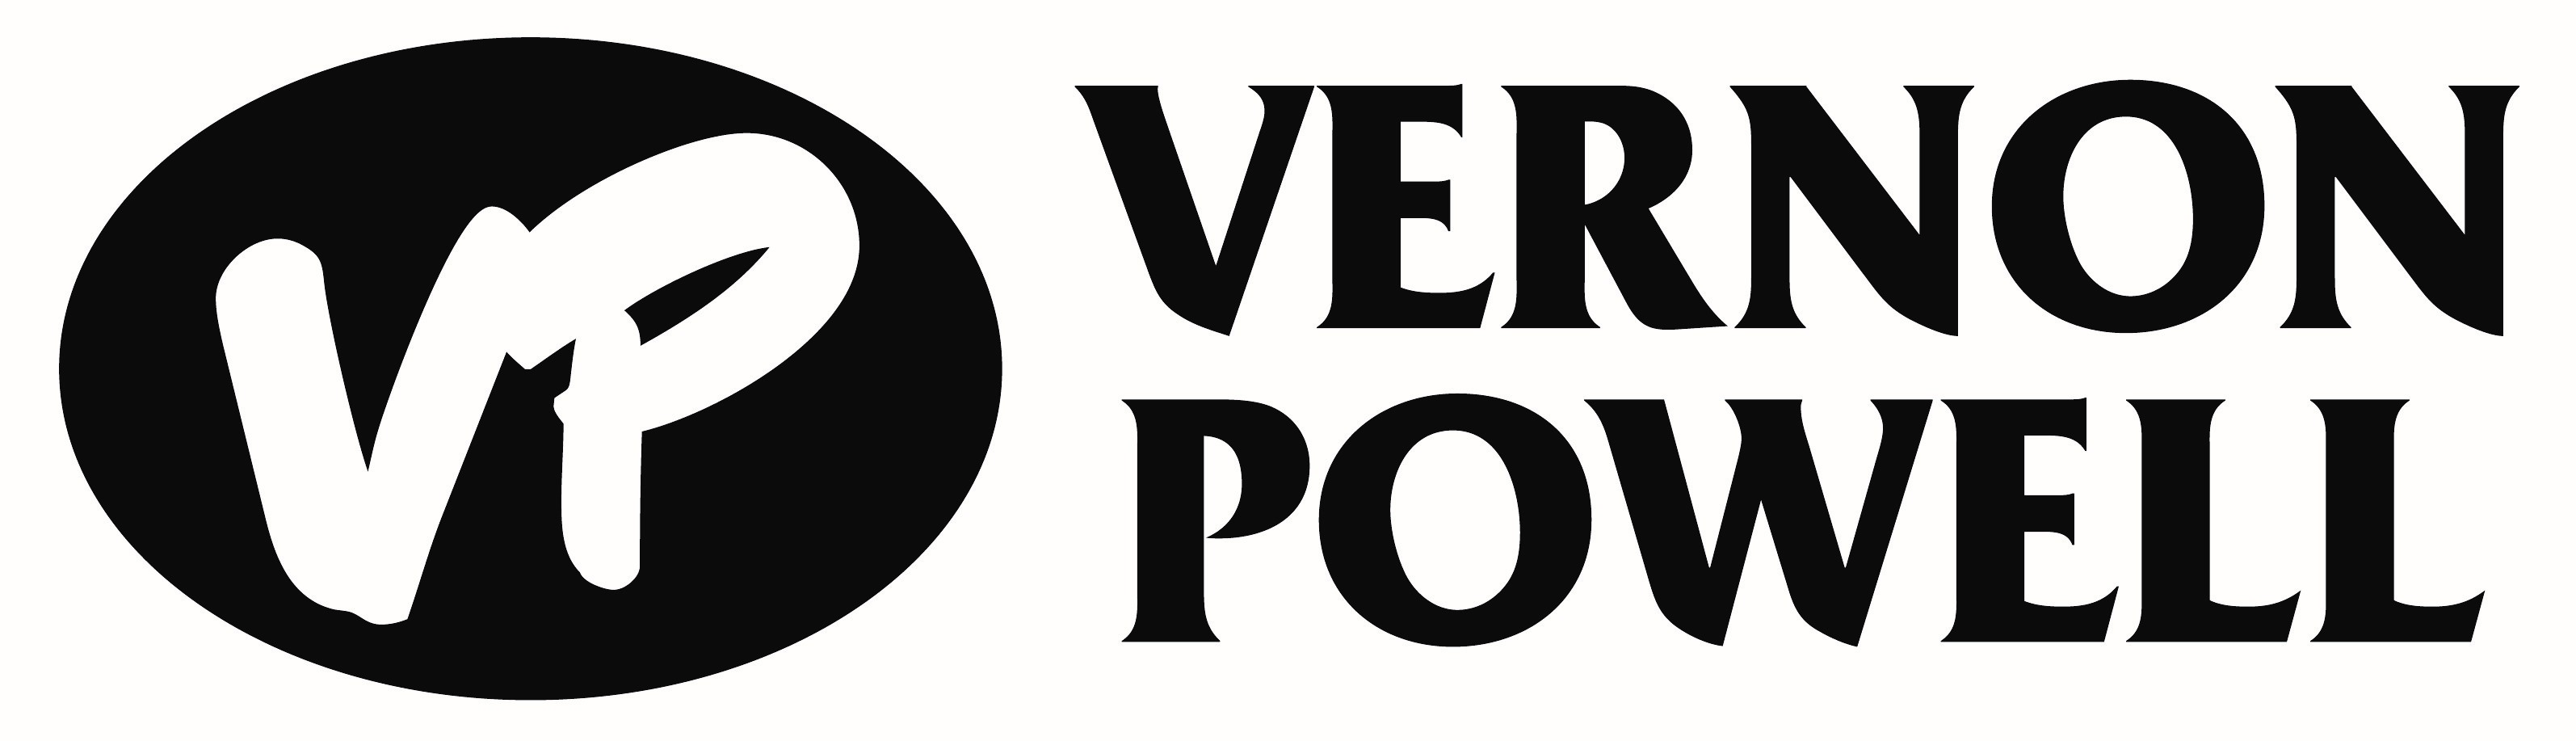 Vernon Powell logo